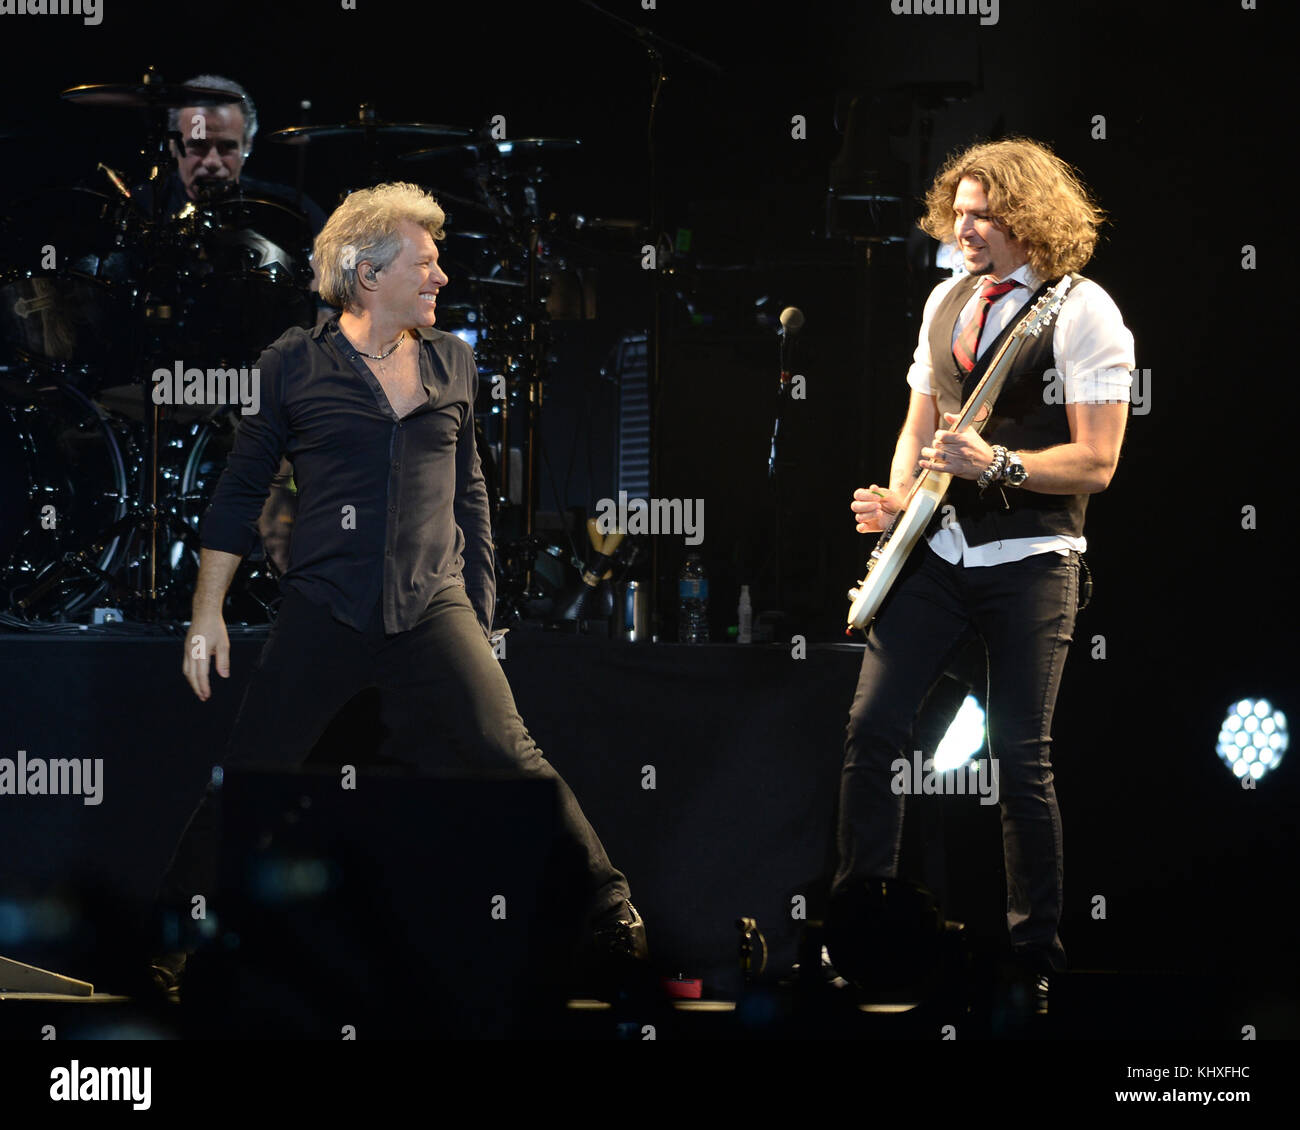 SUNRISE, FL - FEBRUARY 12:  Jon Bon Jovi, Phil X of Bon Jovi performs at The BB&T Center on February 12, 2017 in Sunrise, Florida  People:  Jon Bon Jovi, Phil X Stock Photo